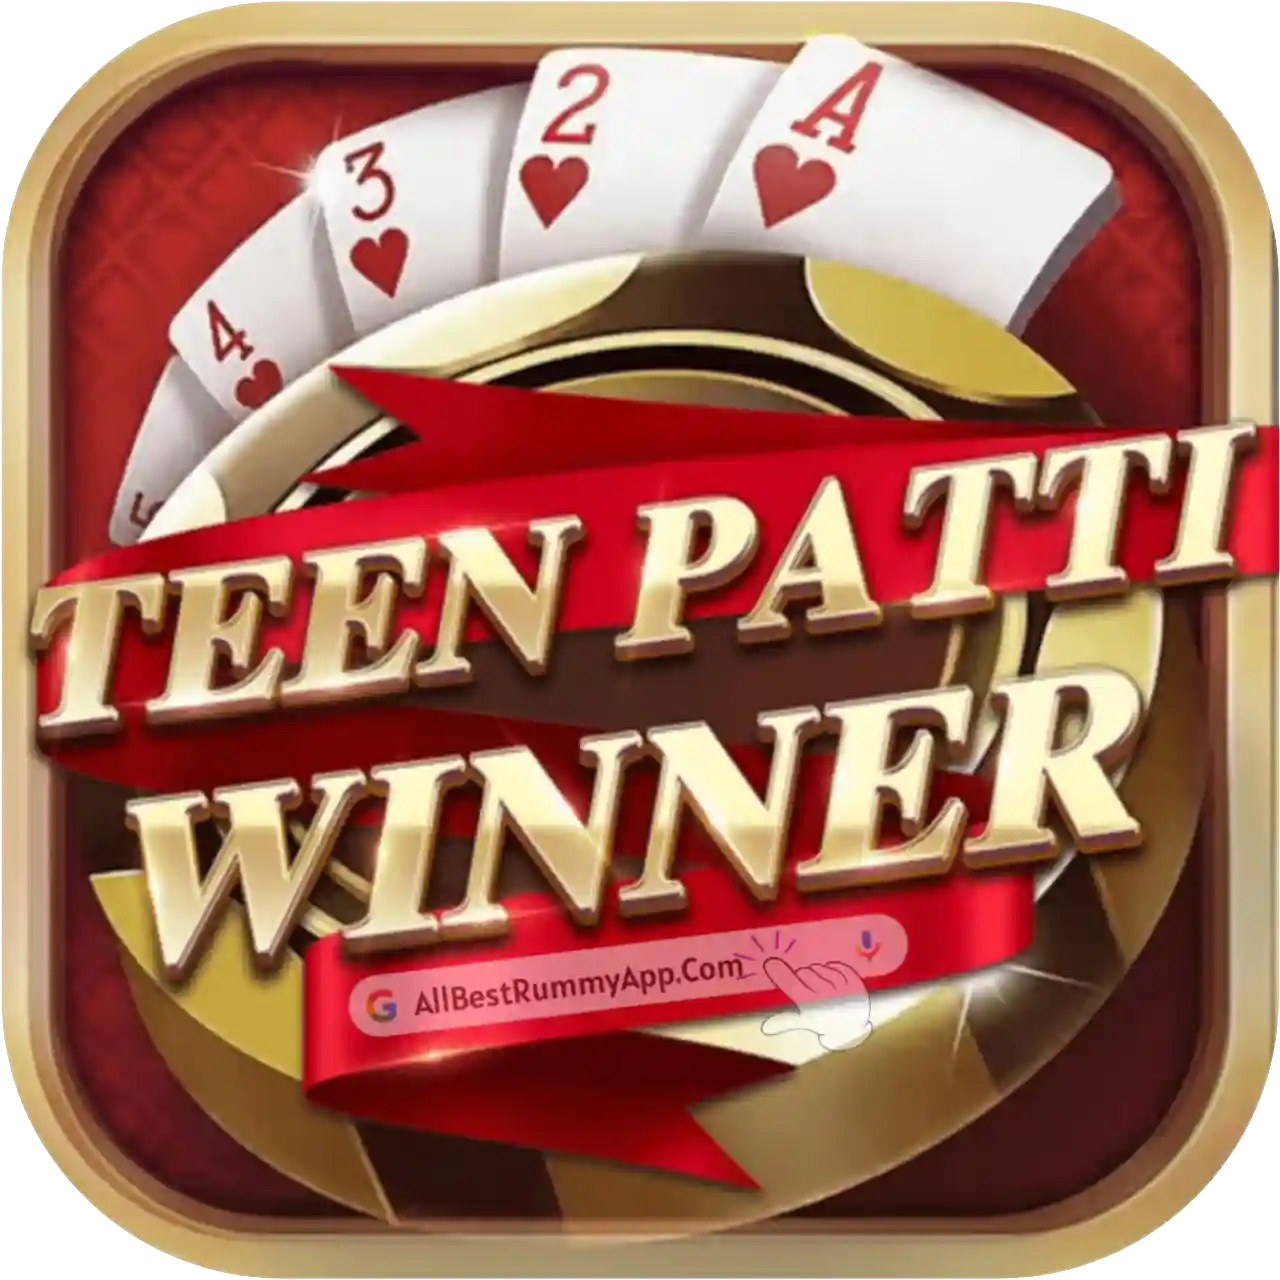 Teen Patti Winner App - All Best Rummy App